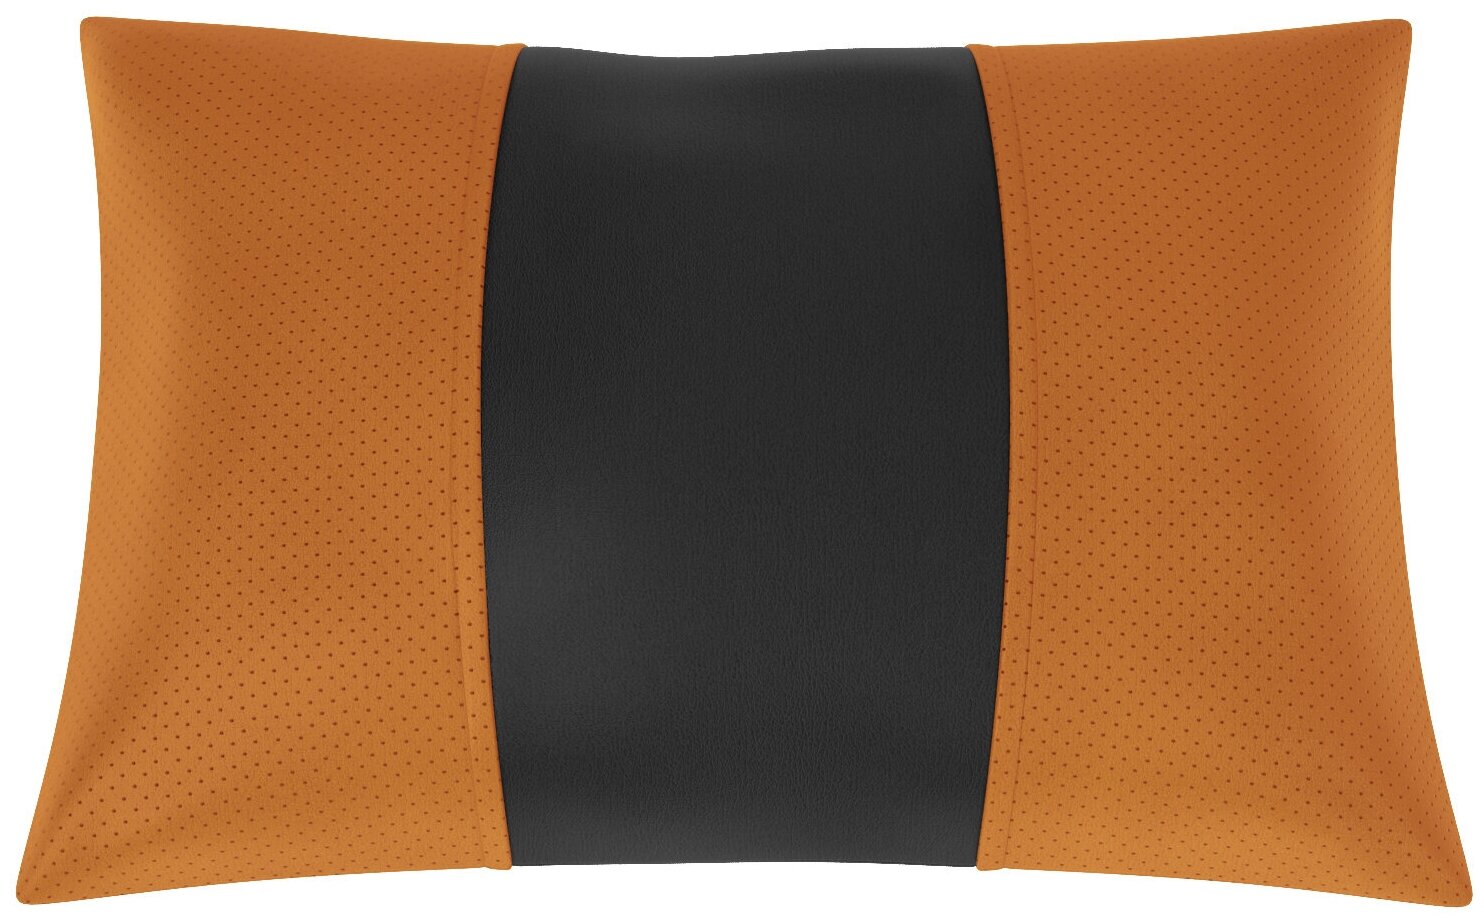 Автомобильная подушка для Opel Vectra B (Опель Вектра B). Экокожа. Середина: чёрная гладкая экокожа. Боковины: оранжевая экокожа с перфорацией. 1 шт.